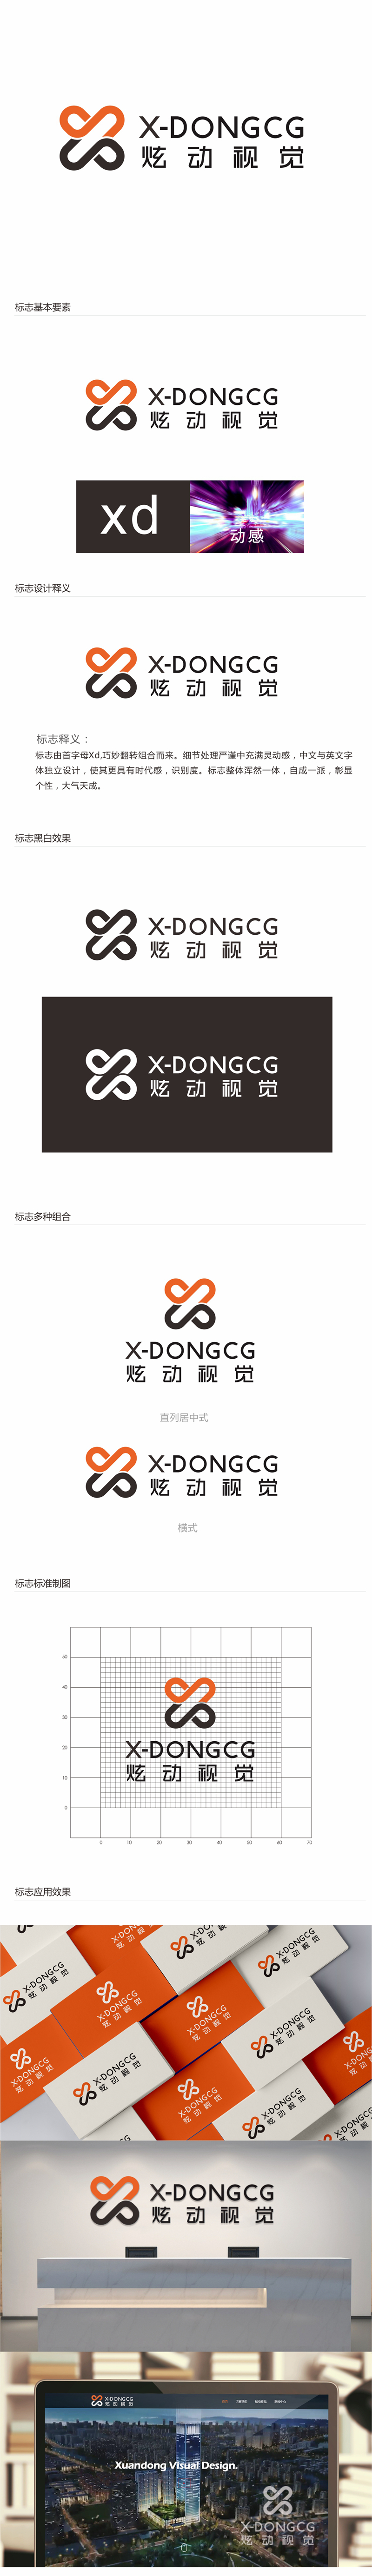 唐国强的炫动视觉logo设计